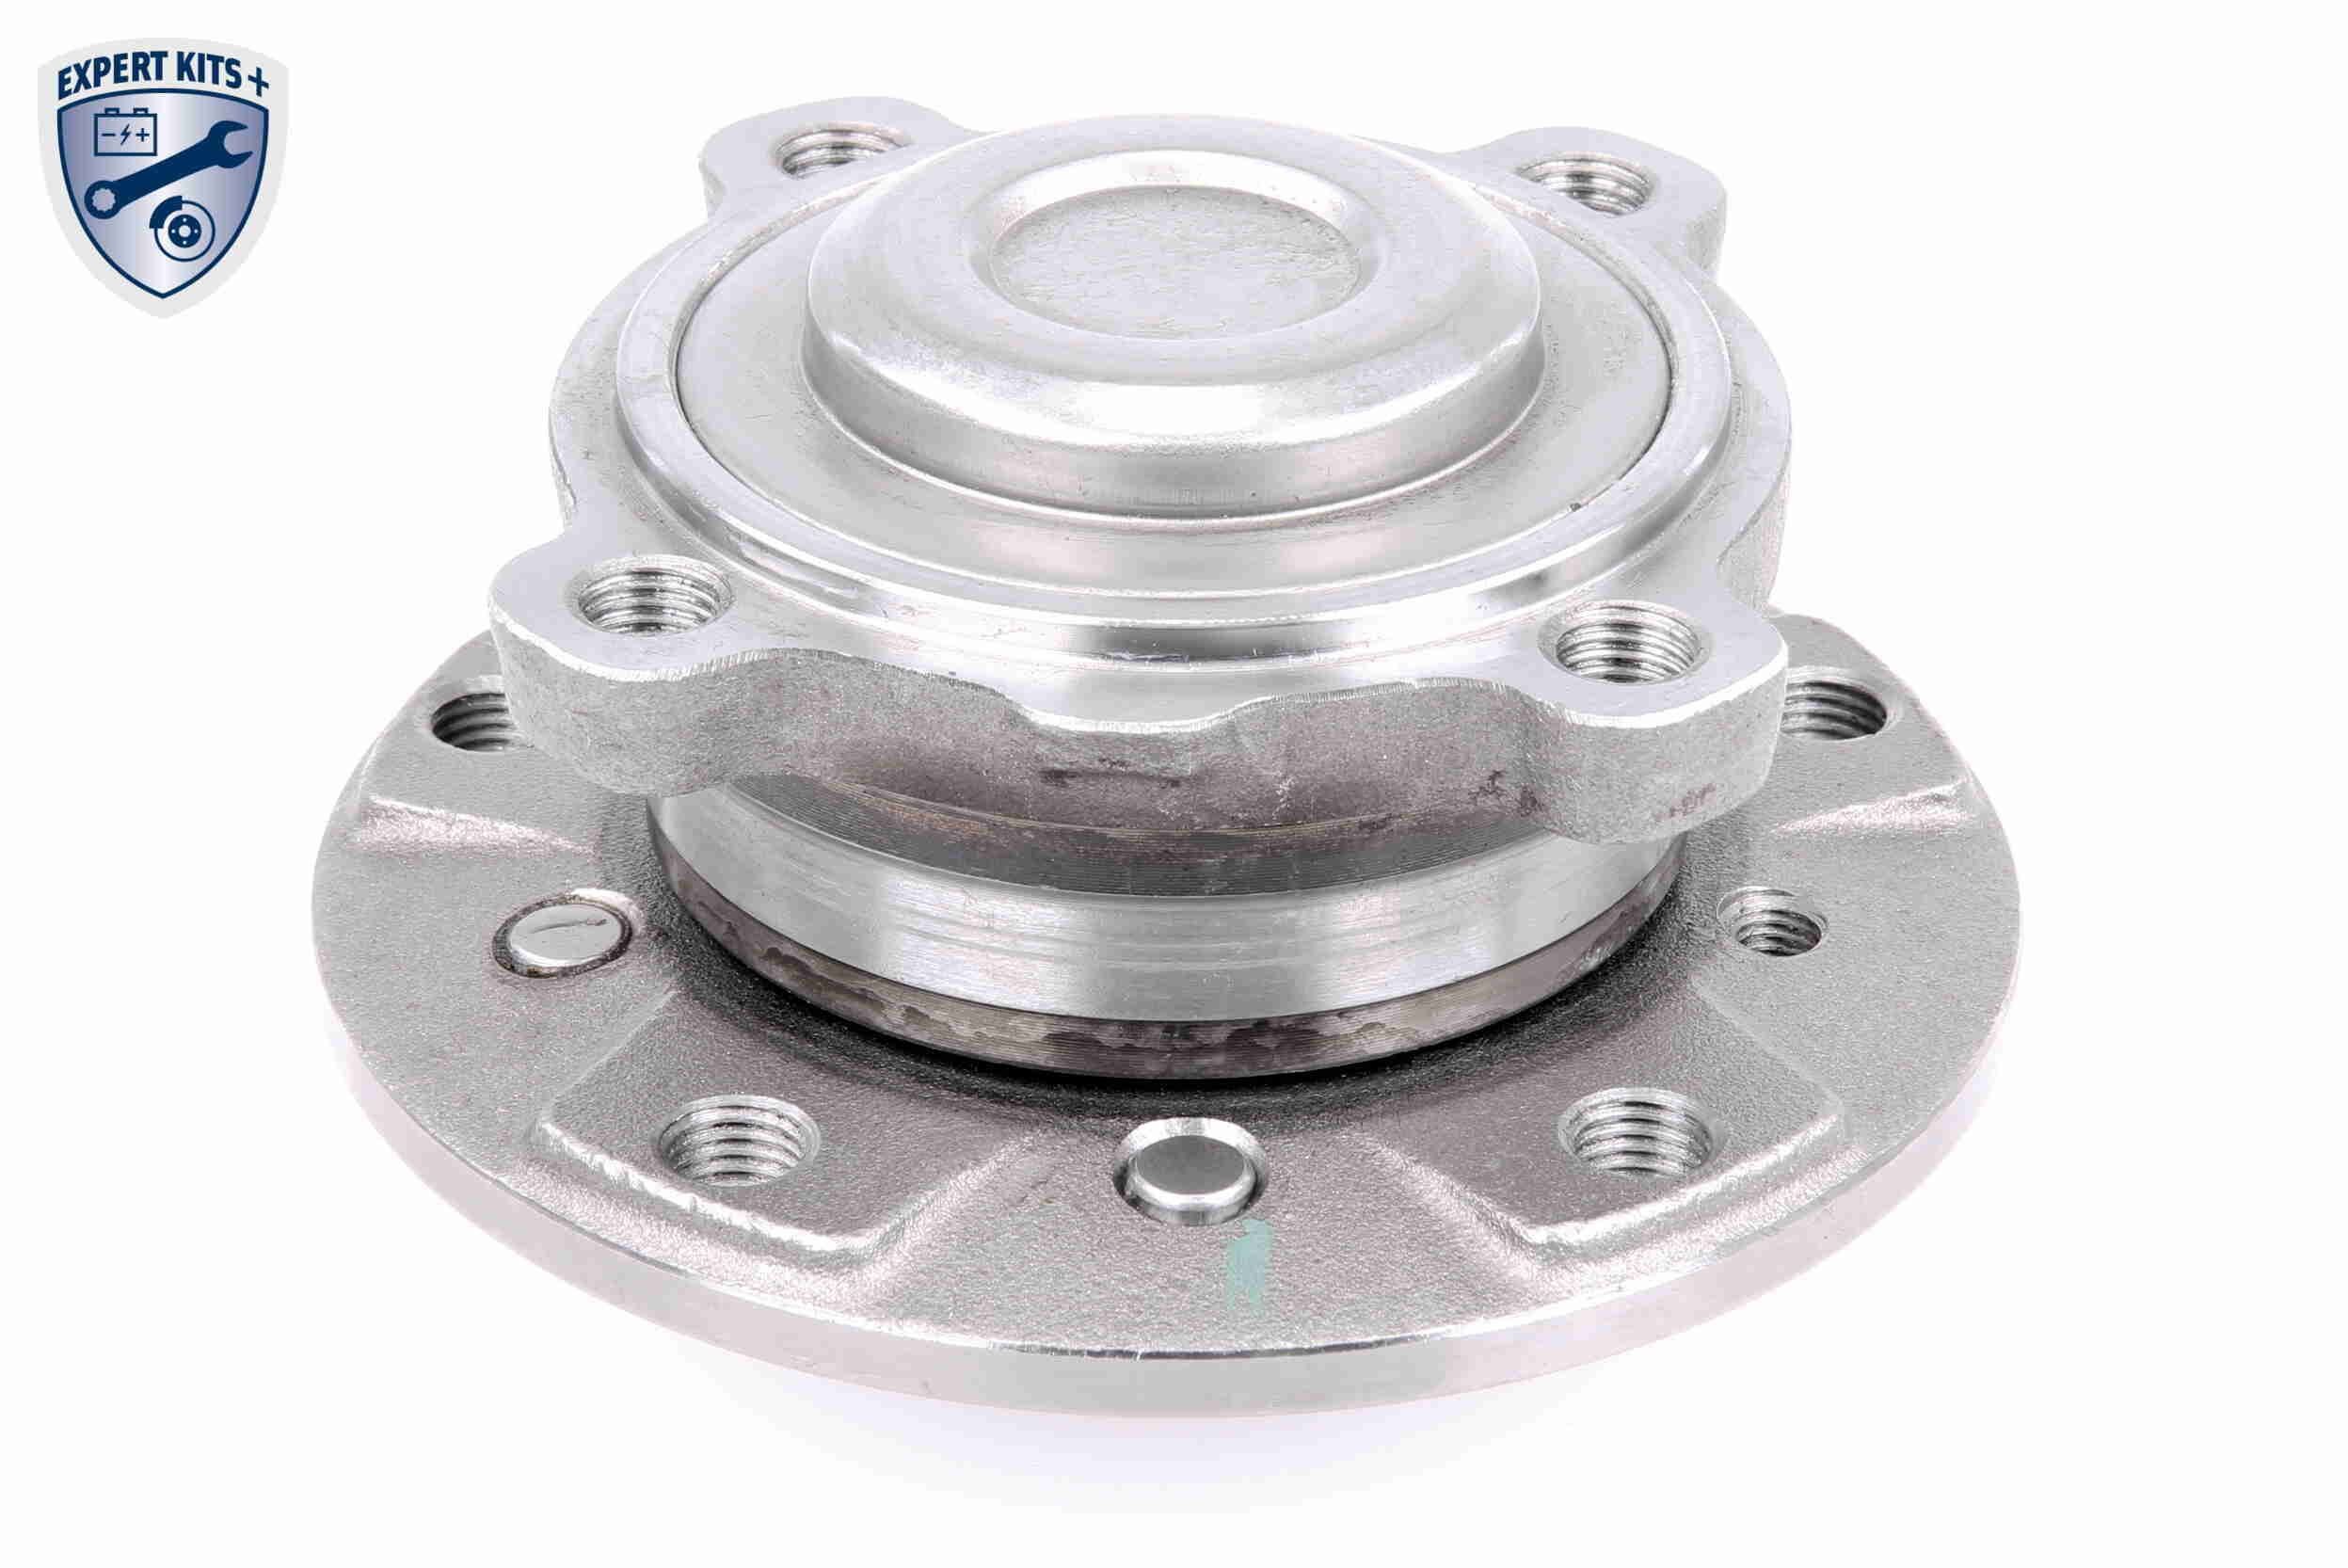 VAICO Front Axle, EXPERT KITS +, 143 mm Wheel hub bearing V20-3417 buy